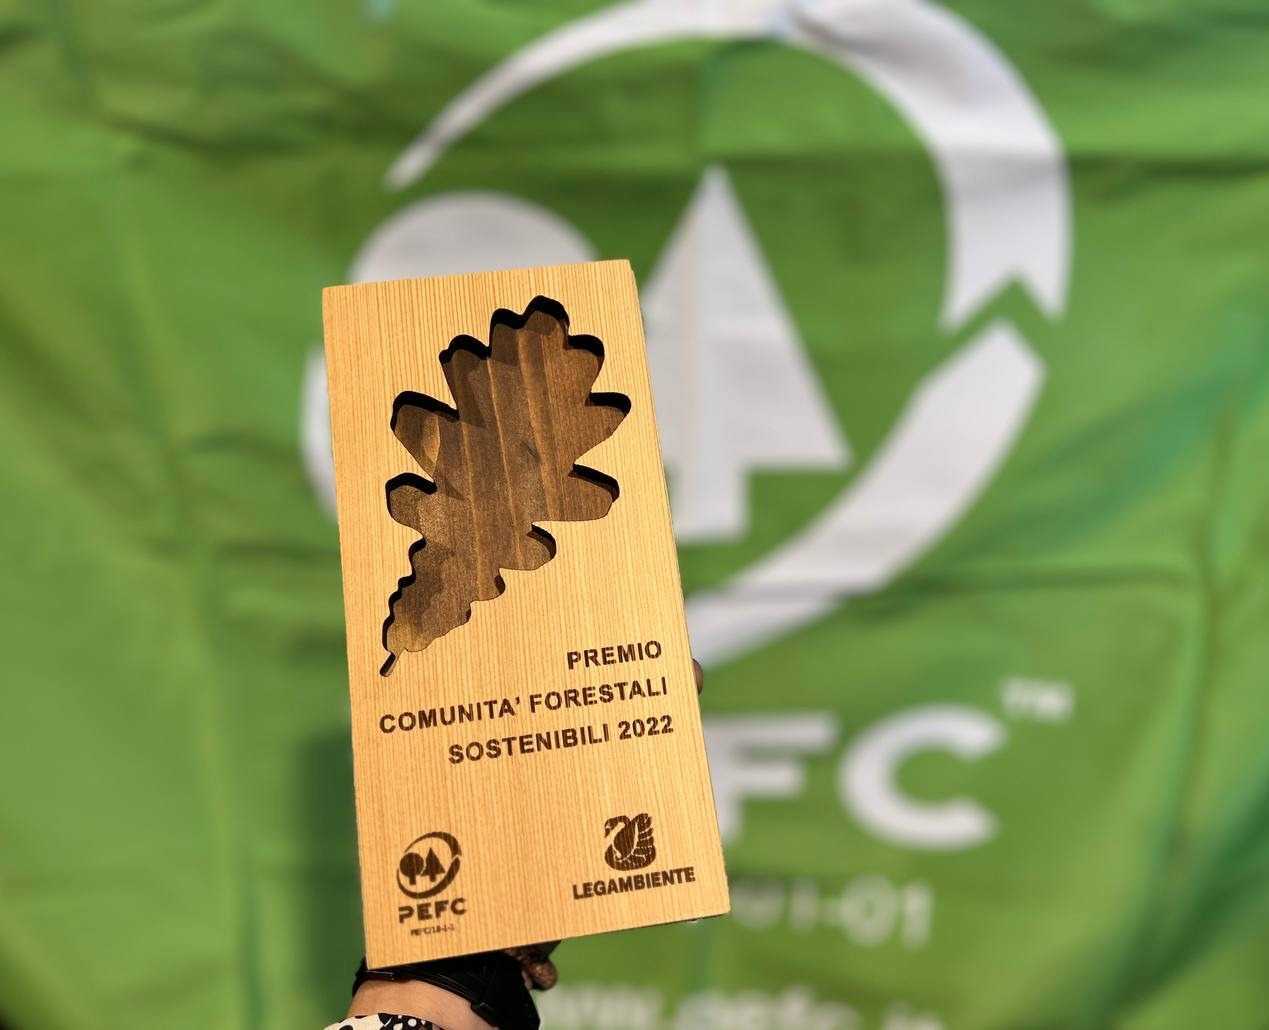 pecf-e-lagambiente-premiano-le-comunita-forestali-sostenibili-2022